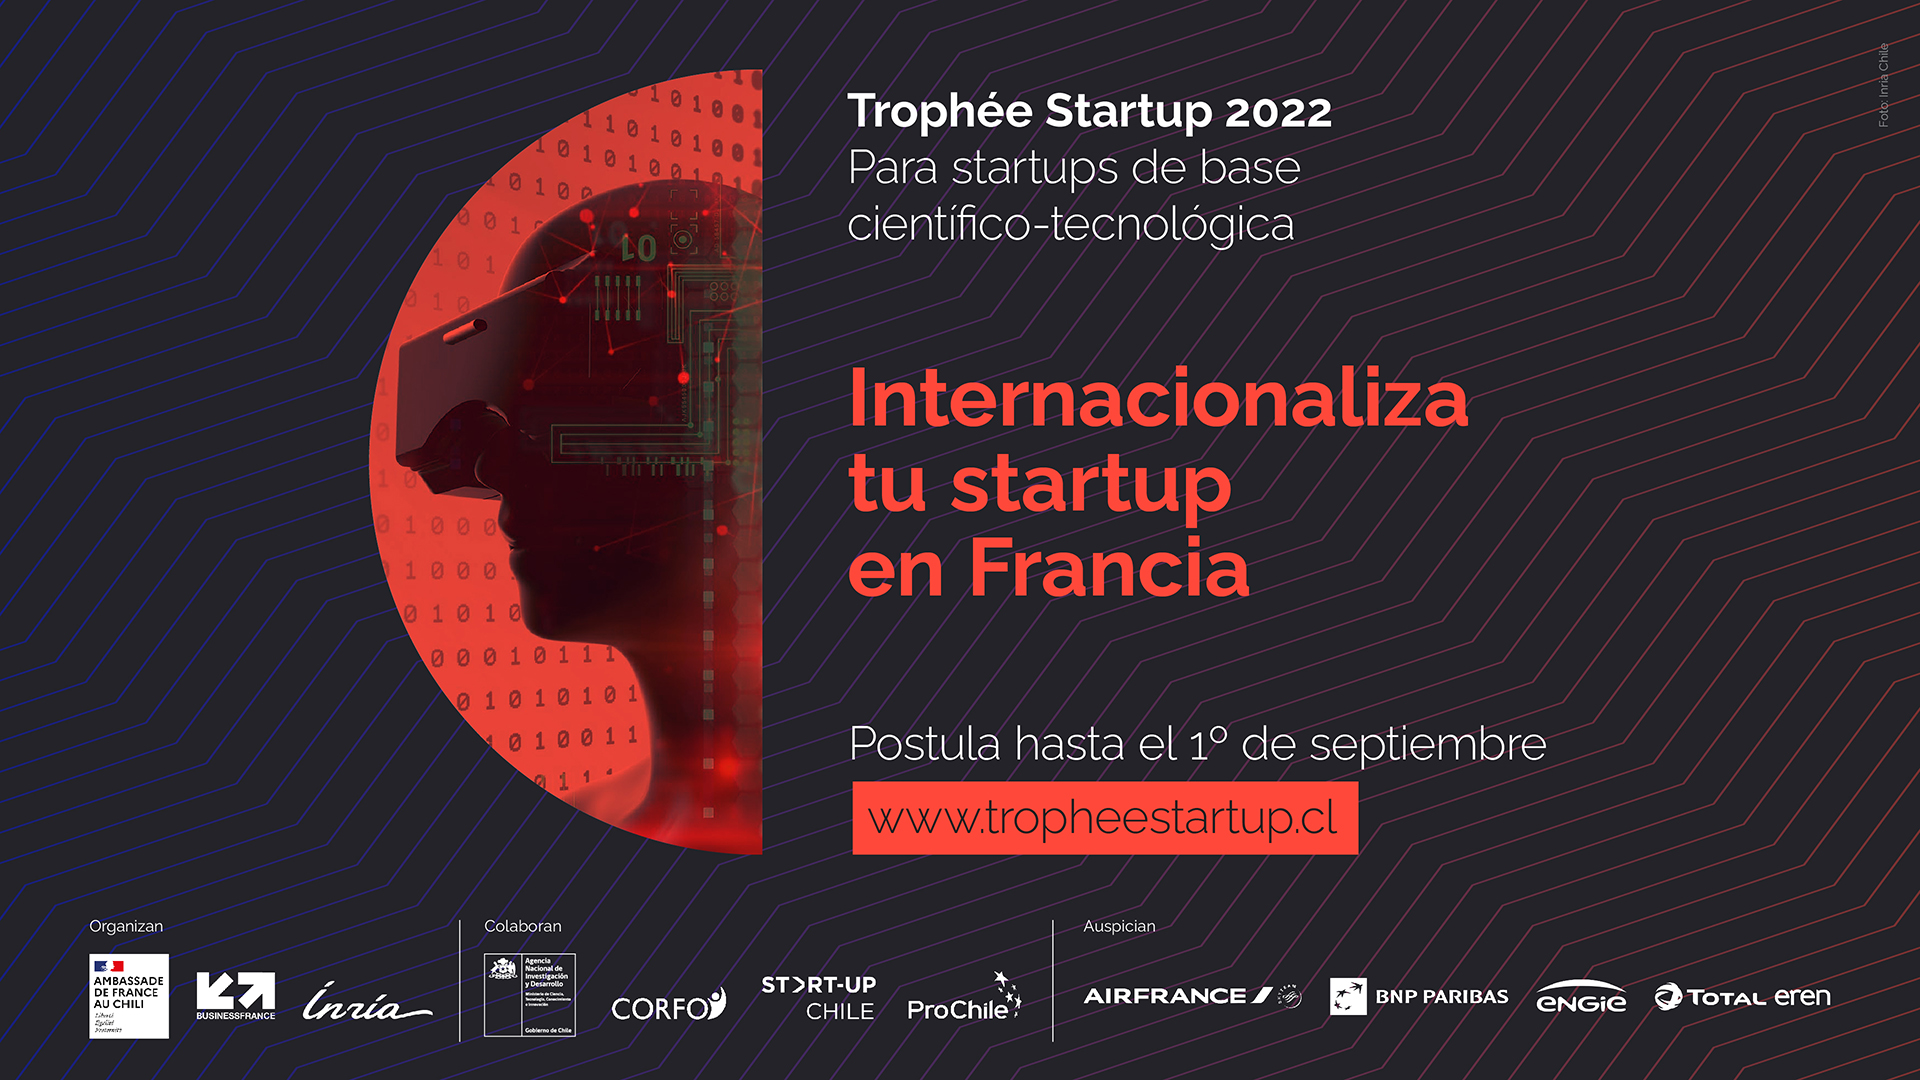 Trophee Startup 2022 